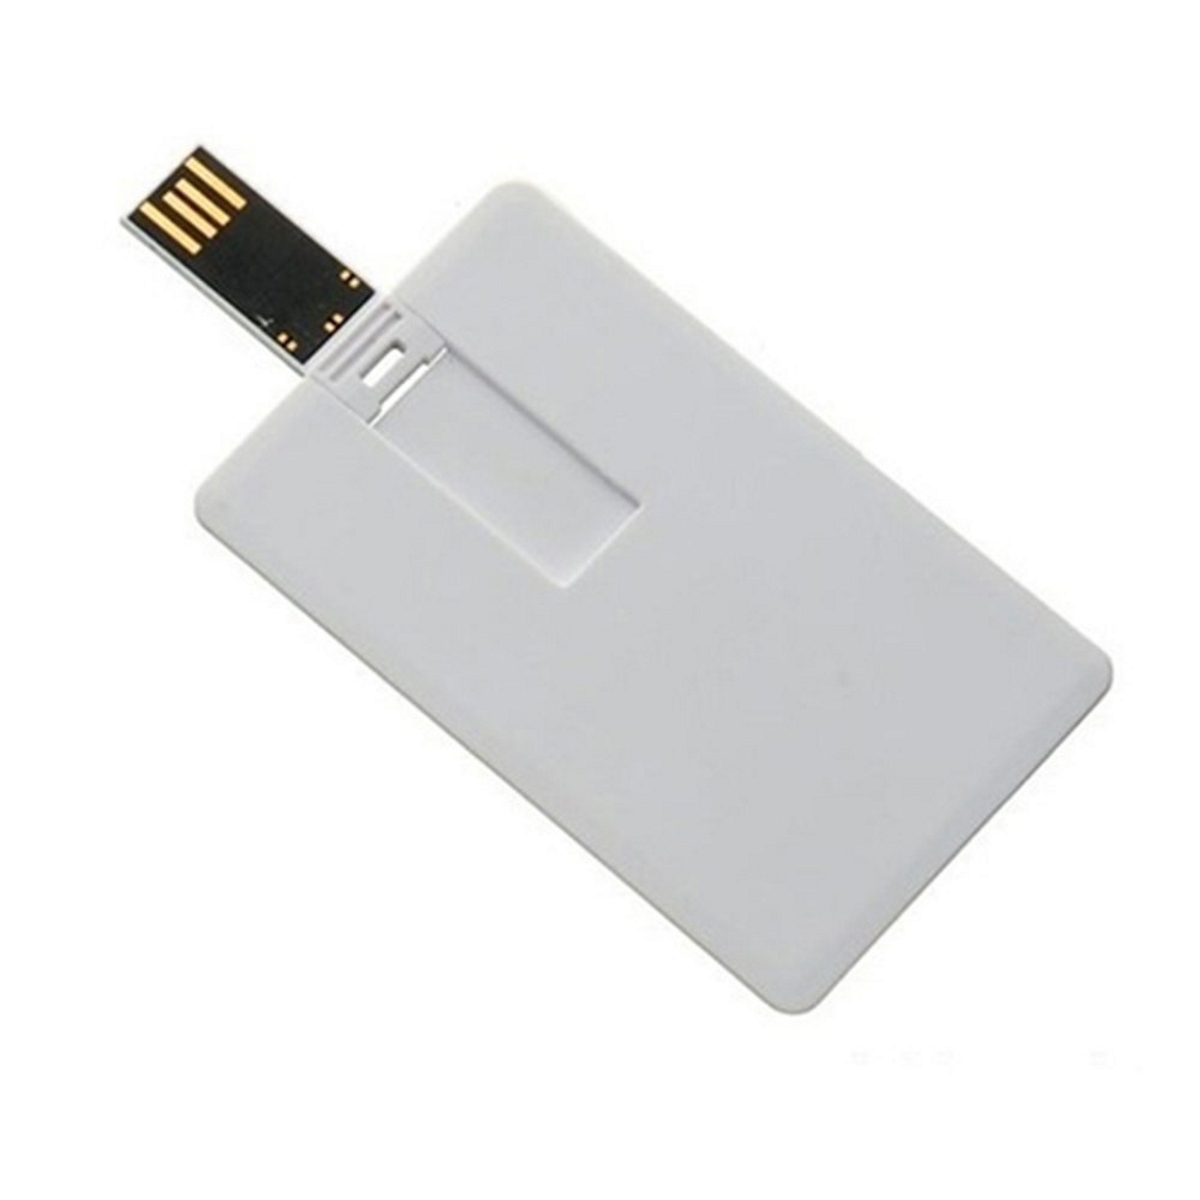 USB GERMANY ® Kreditkarte USB-Stick 64 (Weiss, GB)